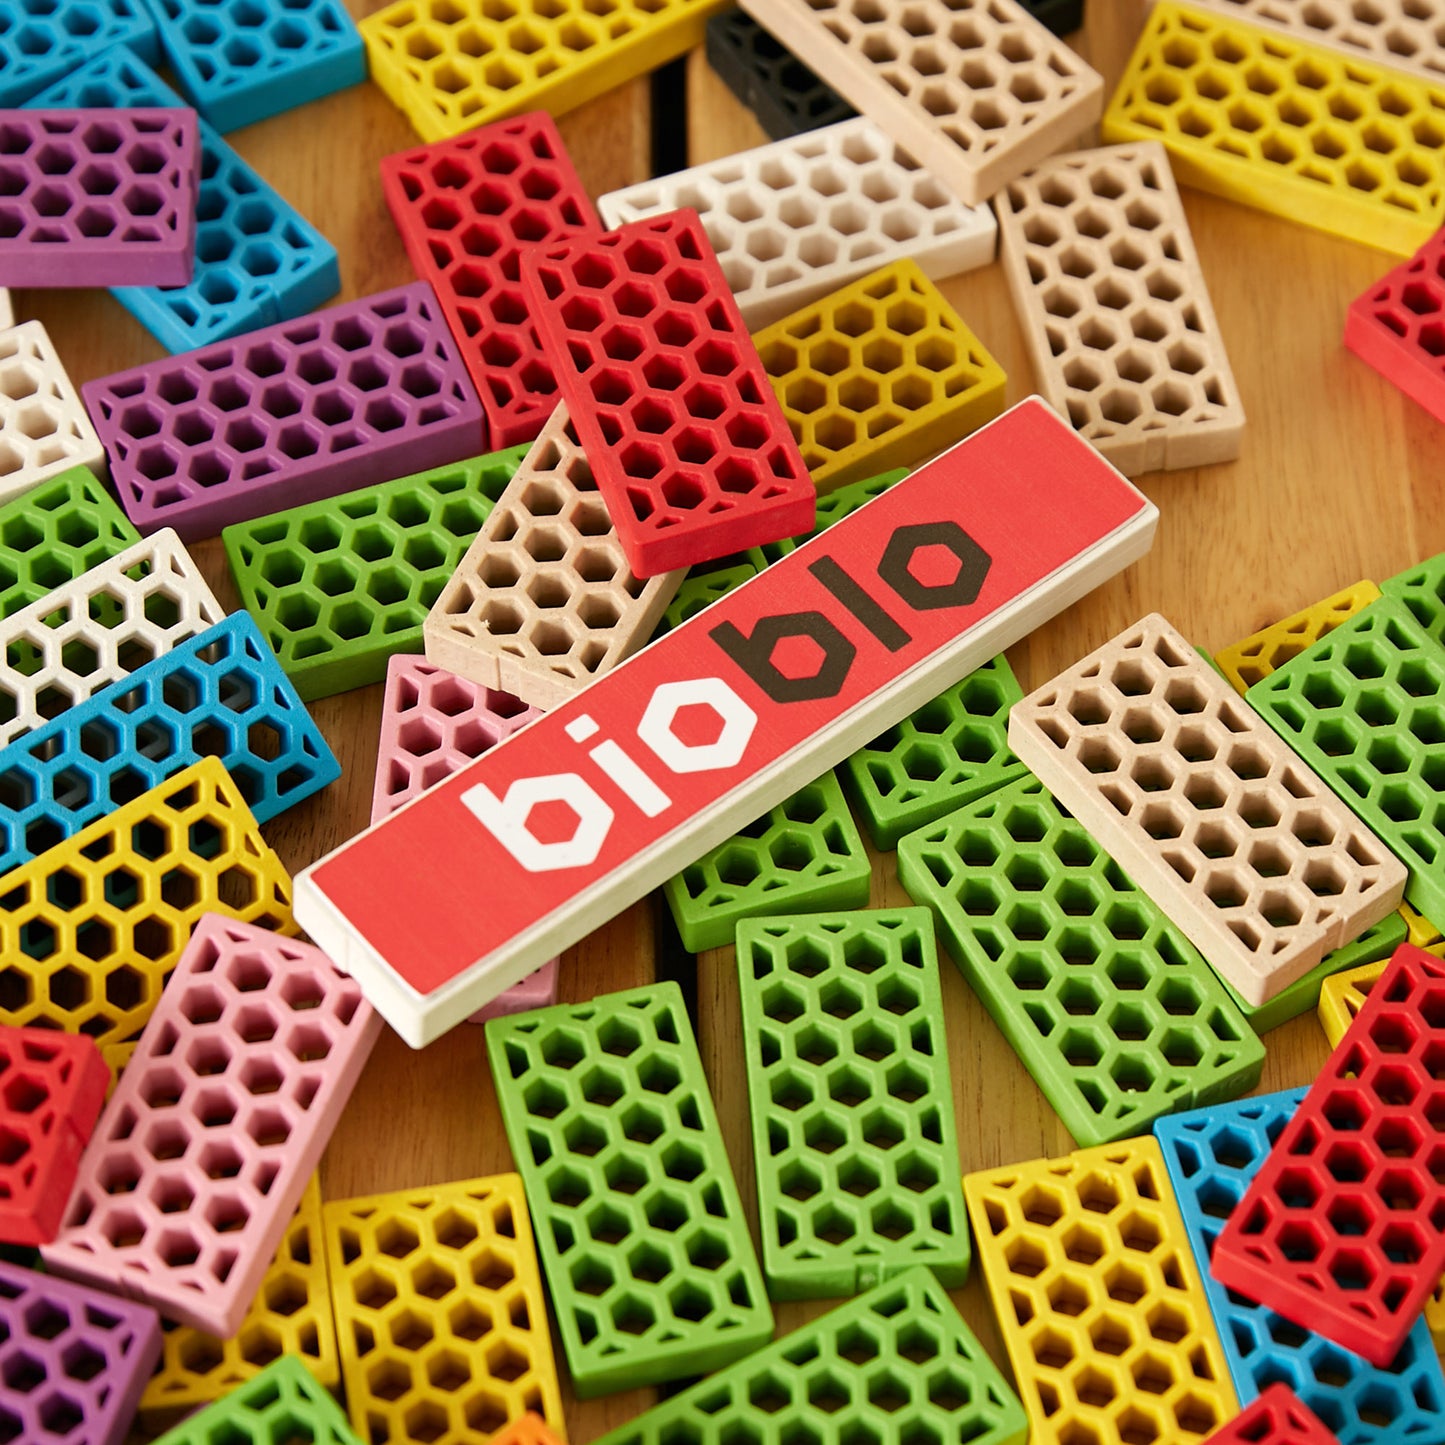 Bioblo - Domino "Limited Edition" with 109 blocks